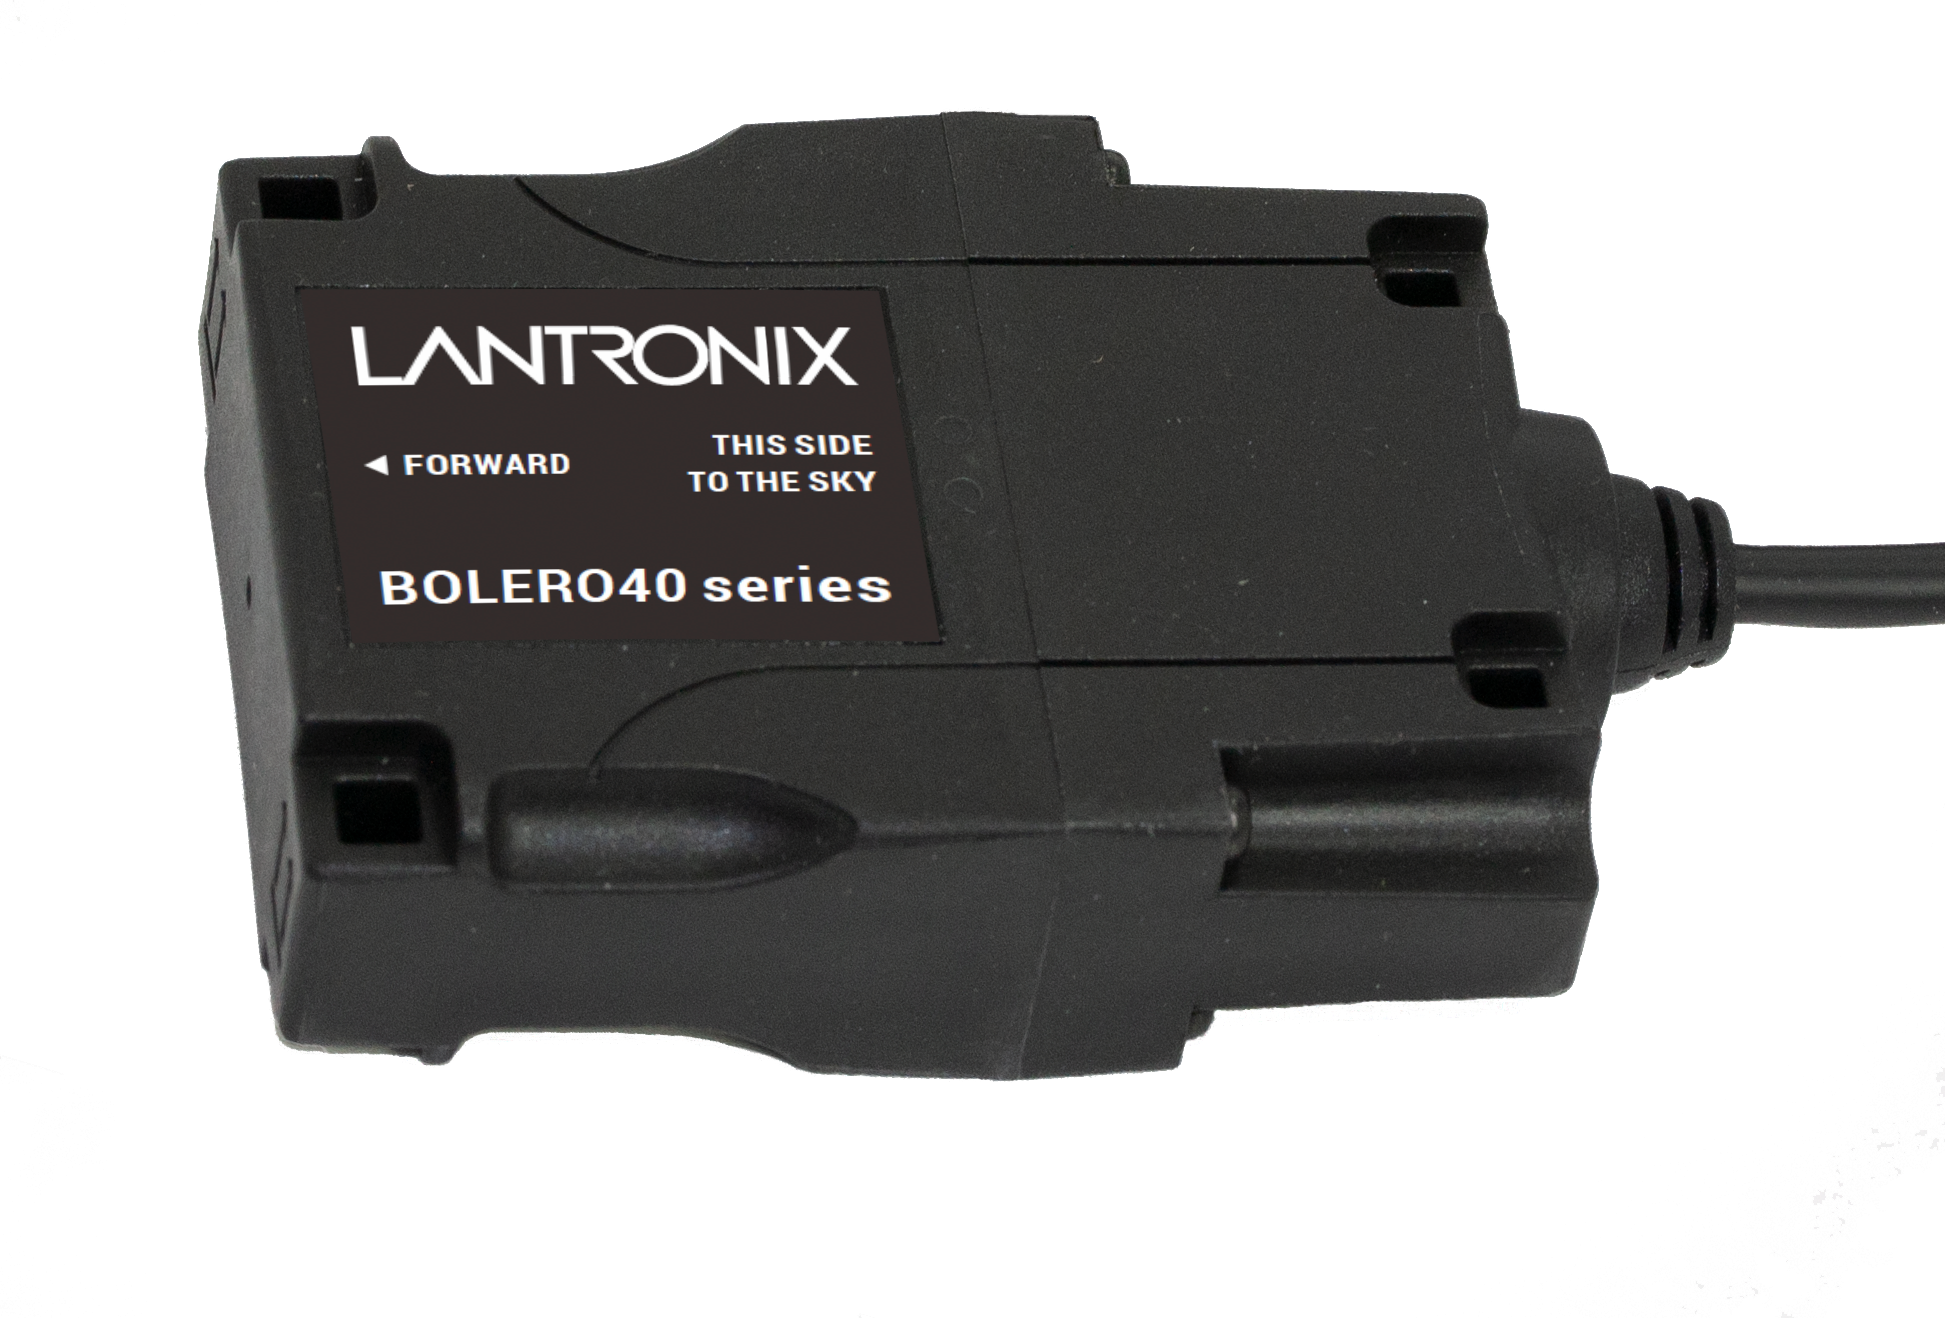 Details about   Lantronix MSS-100 # 7 L7B 5265 